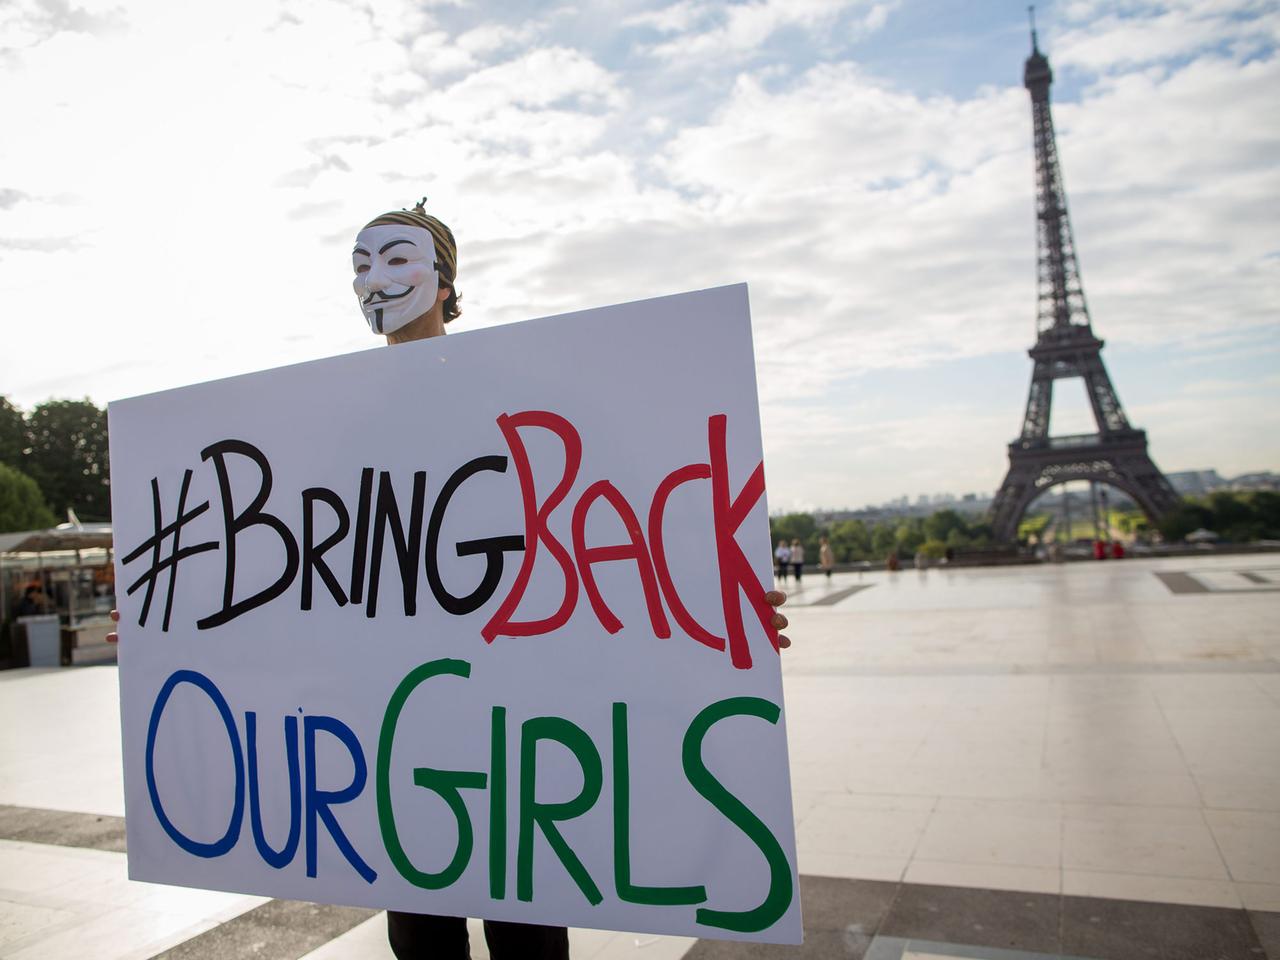 Ein maskierter Mann hält ein Schild mit der Aufschrift "Bring back our girls", in dem Hintergrund der Eiffelturm.